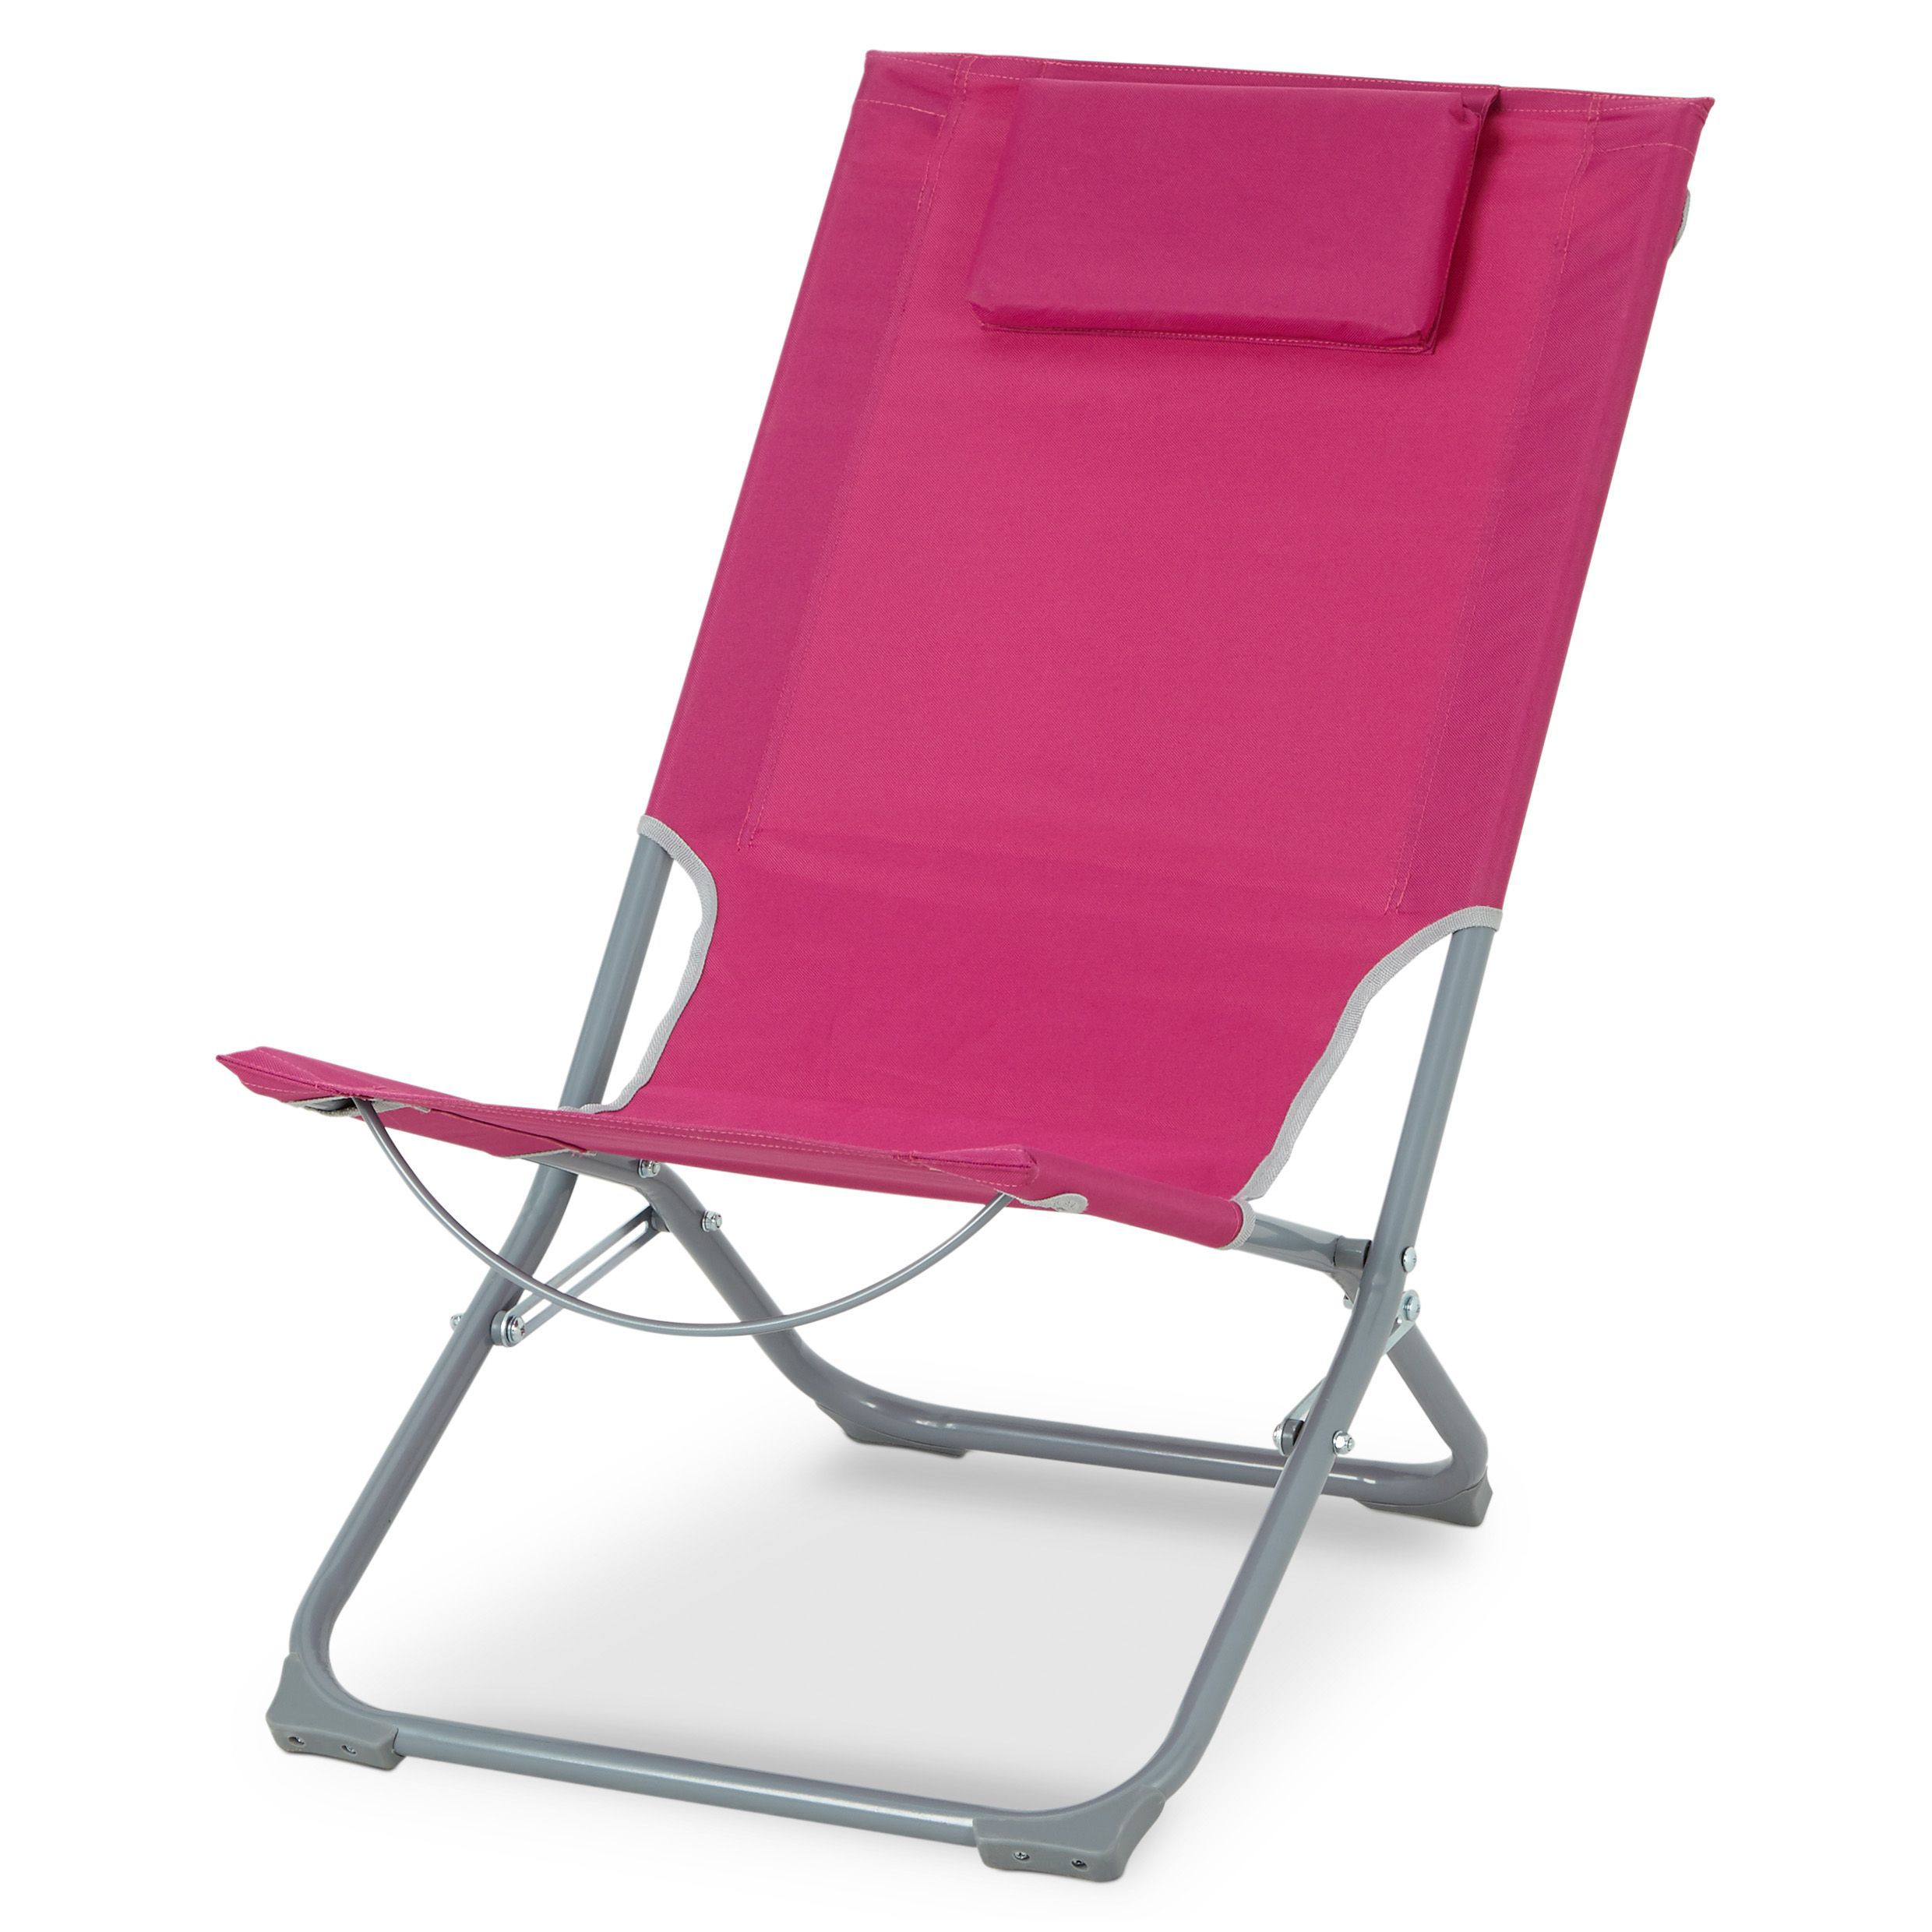 Creatice Bq Beach Chair 